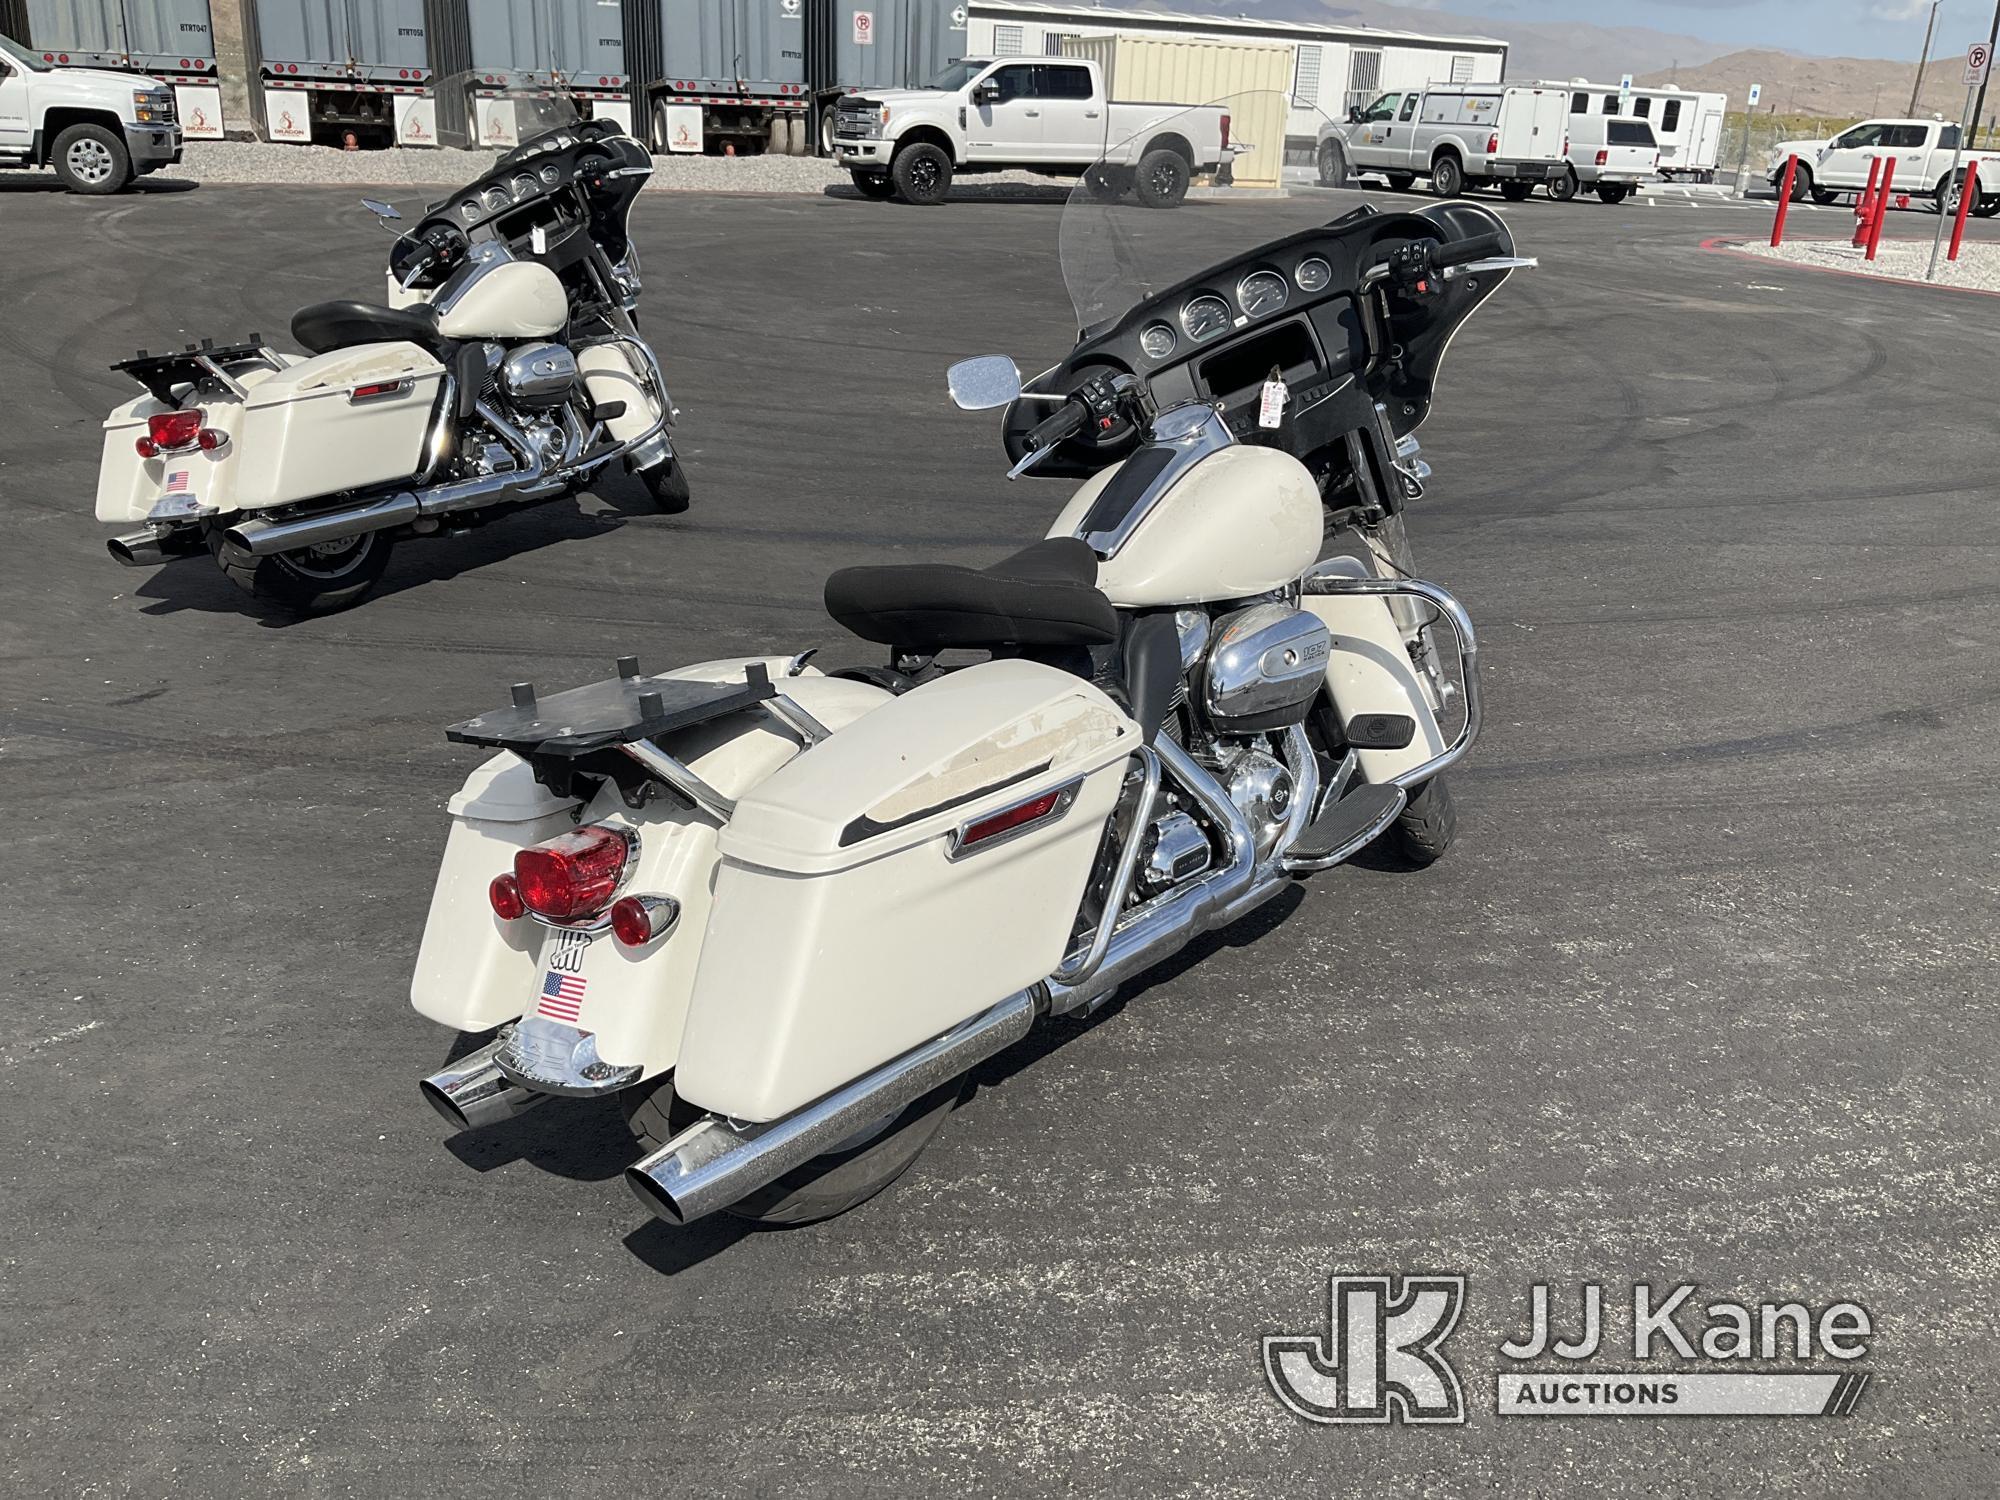 (Las Vegas, NV) 2018 Harley-Davidson FLHTP Police Missing Mirror Jump To Start, Runs & Moves